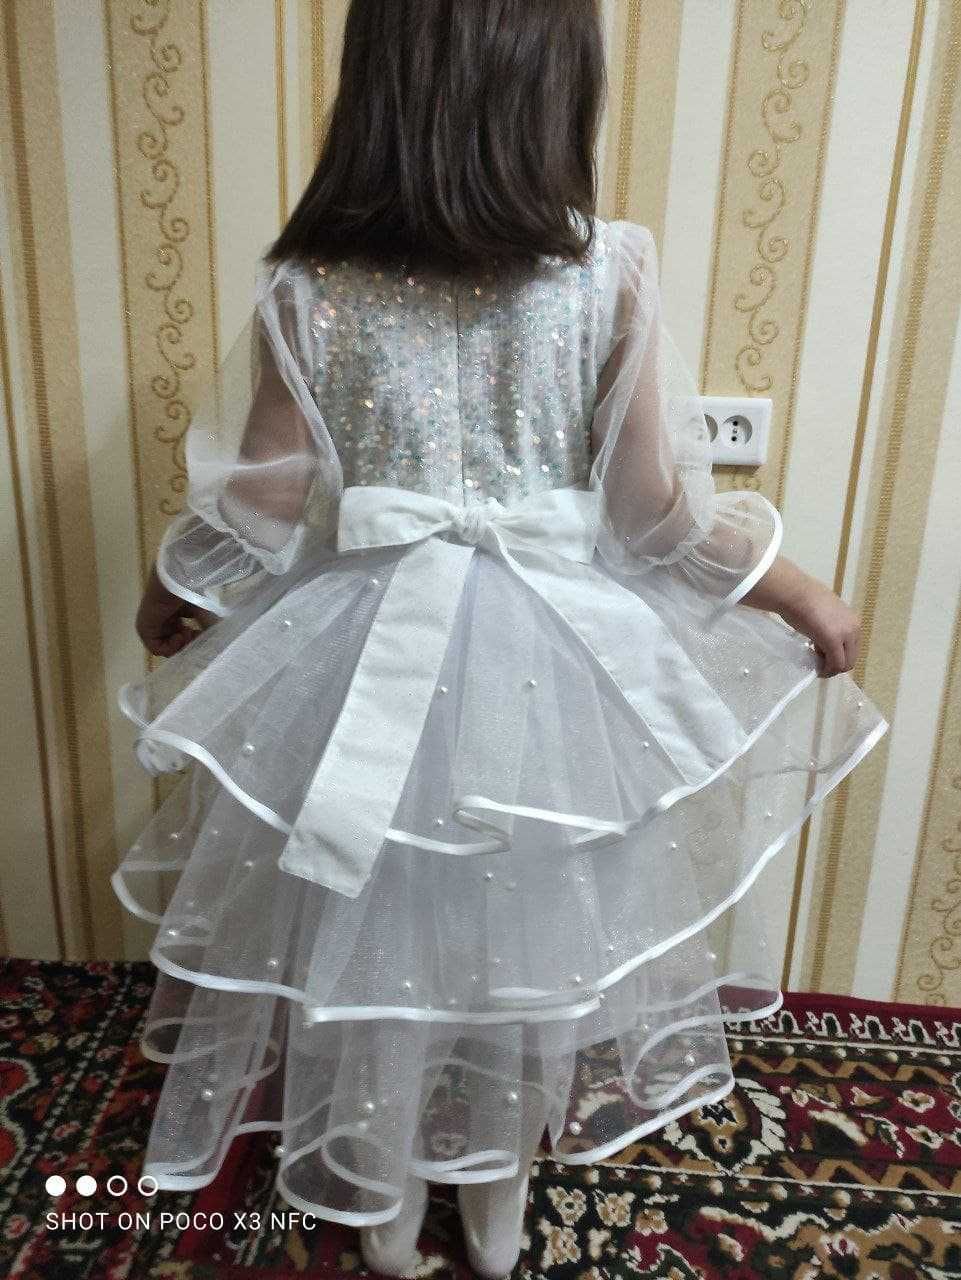 Нарядные белые пышные платья с ободком на утренник, свадьбу. 6-10 лет.